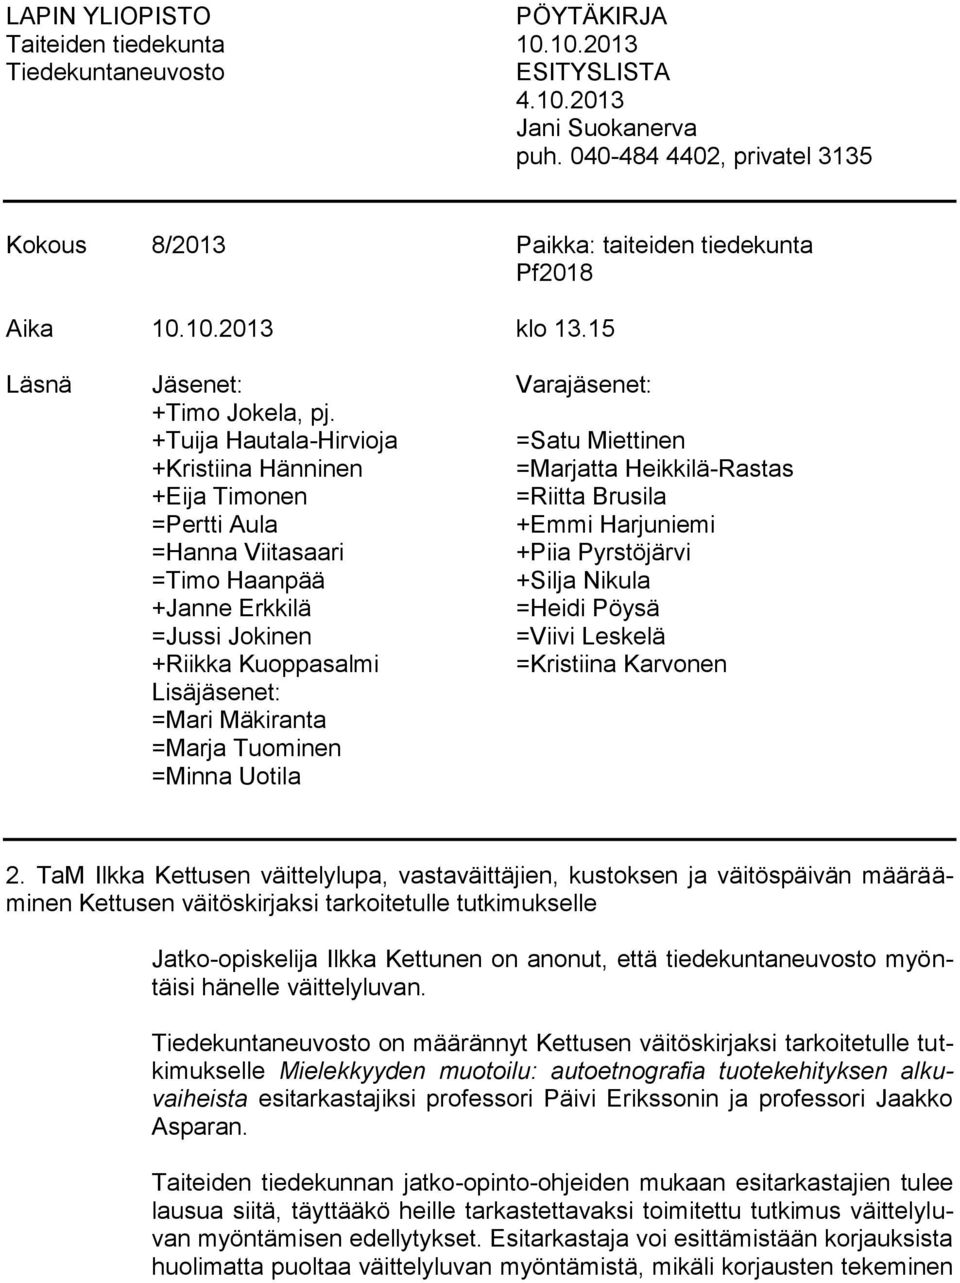 +Tuija Hautala-Hirvioja =Satu Miettinen +Kristiina Hänninen =Marjatta Heikkilä-Rastas +Eija Timonen =Riitta Brusila =Pertti Aula +Emmi Harjuniemi =Hanna Viitasaari +Piia Pyrstöjärvi =Timo Haanpää